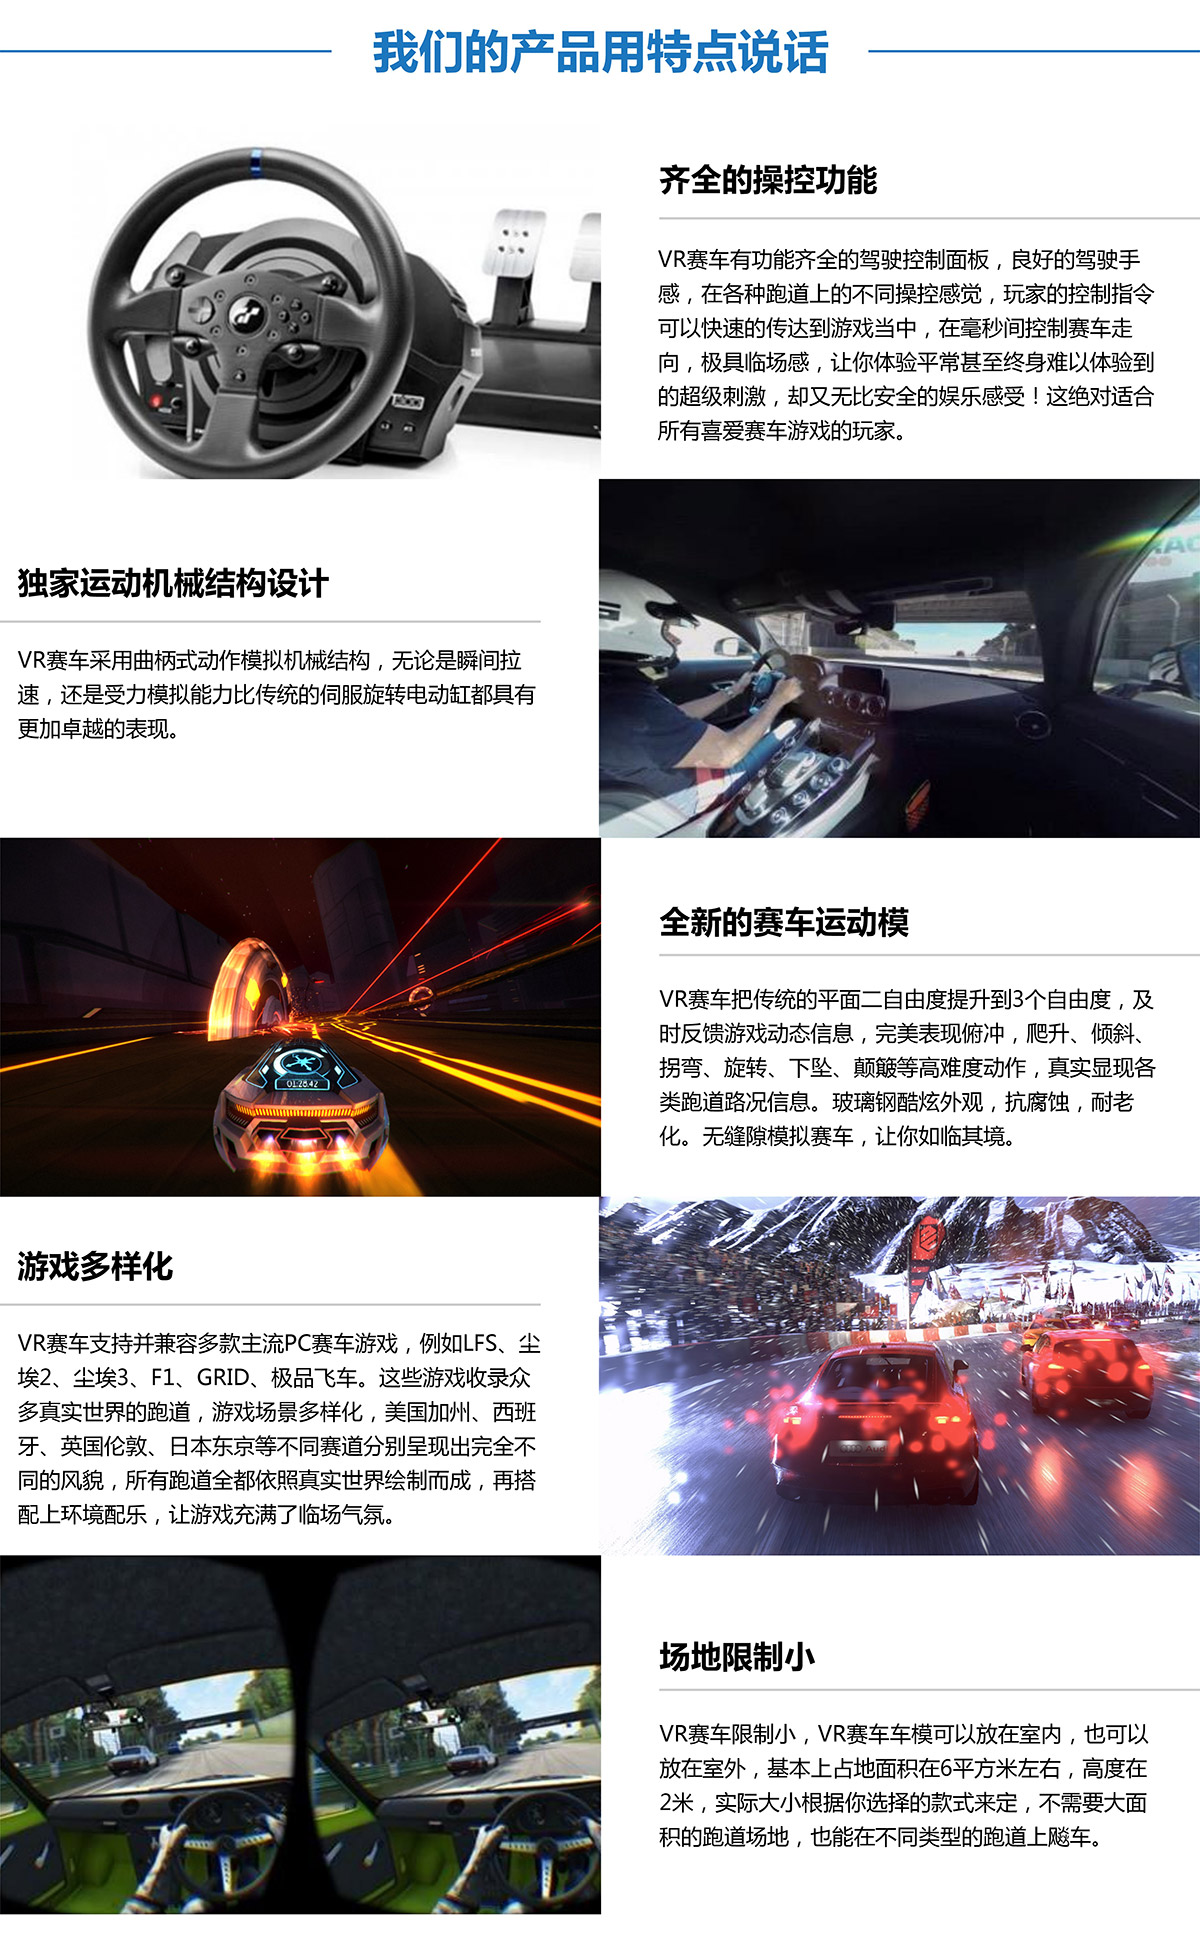 成都虚拟VR赛车产品用特点说话.jpg